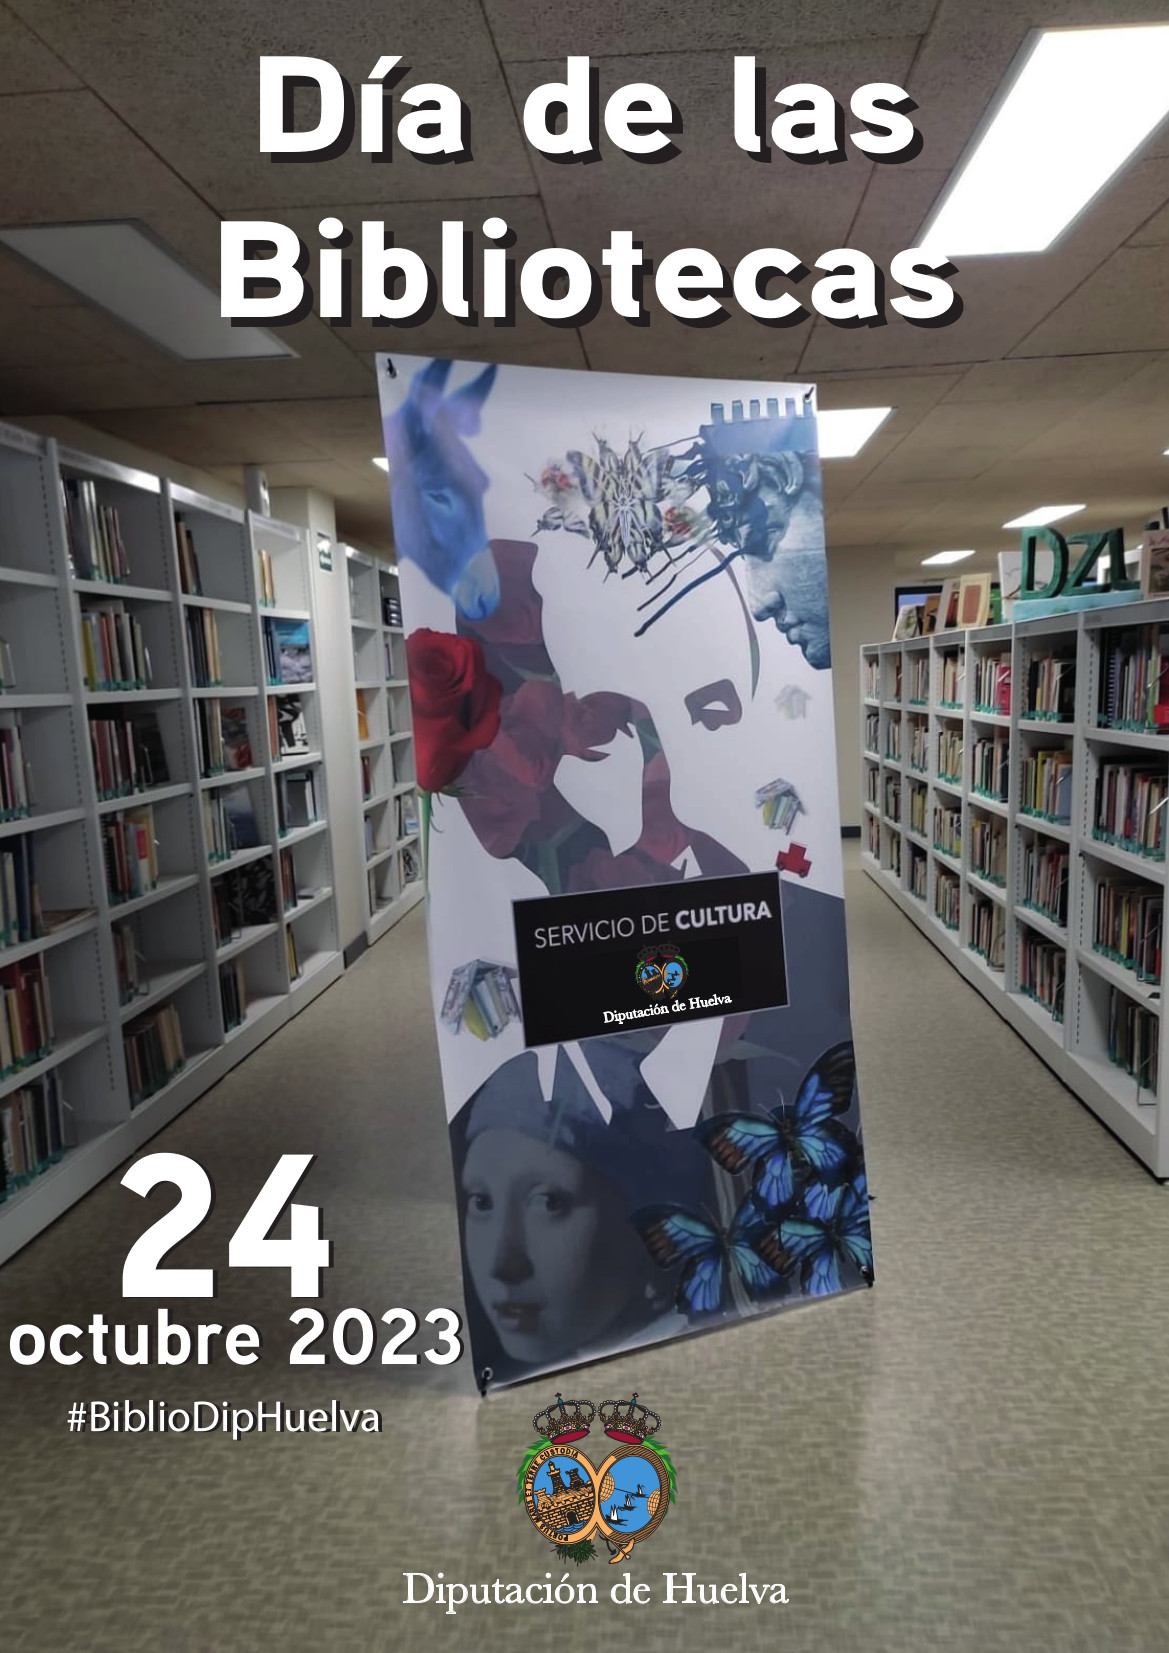 La Biblioteca de la Diputación adquiere medio centenar de títulos desde el año pasado